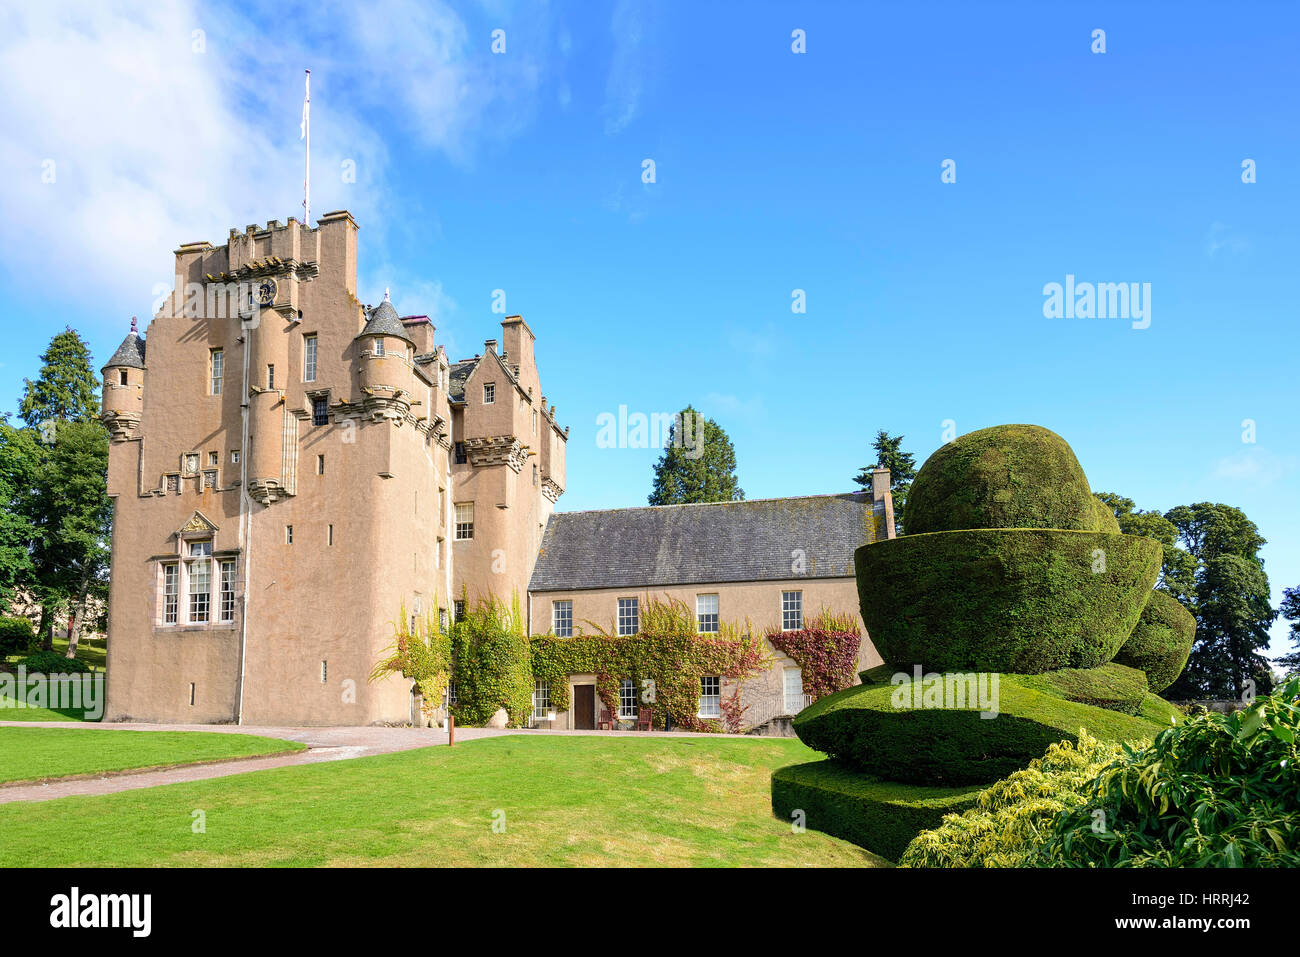 Avis de Crathes Castle en Ecosse. Crathes est un château du 16ème siècle près de Banchory dans la région d'Aberdeenshire en Écosse. Banque D'Images